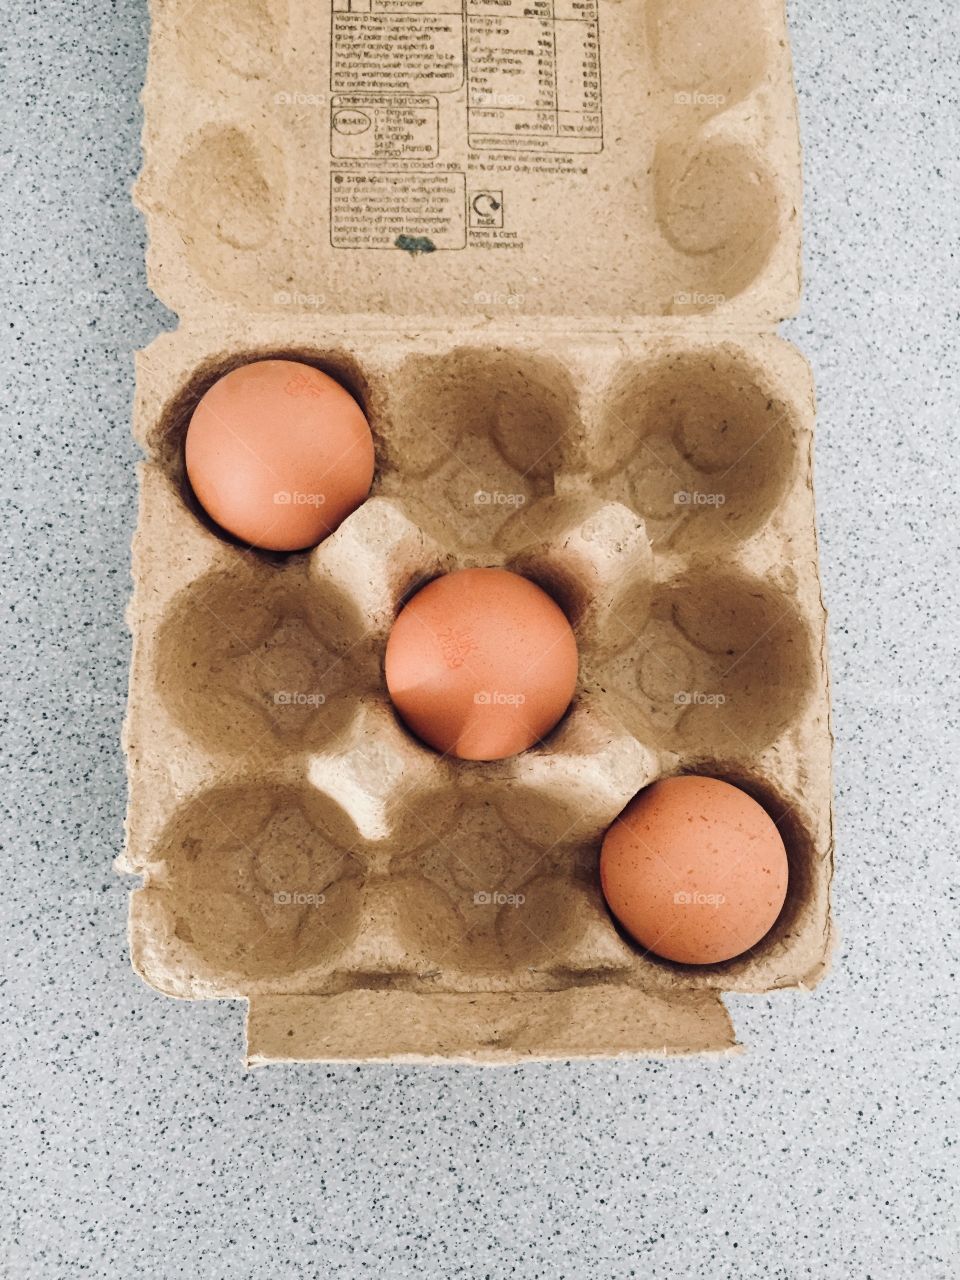 Three eggs across